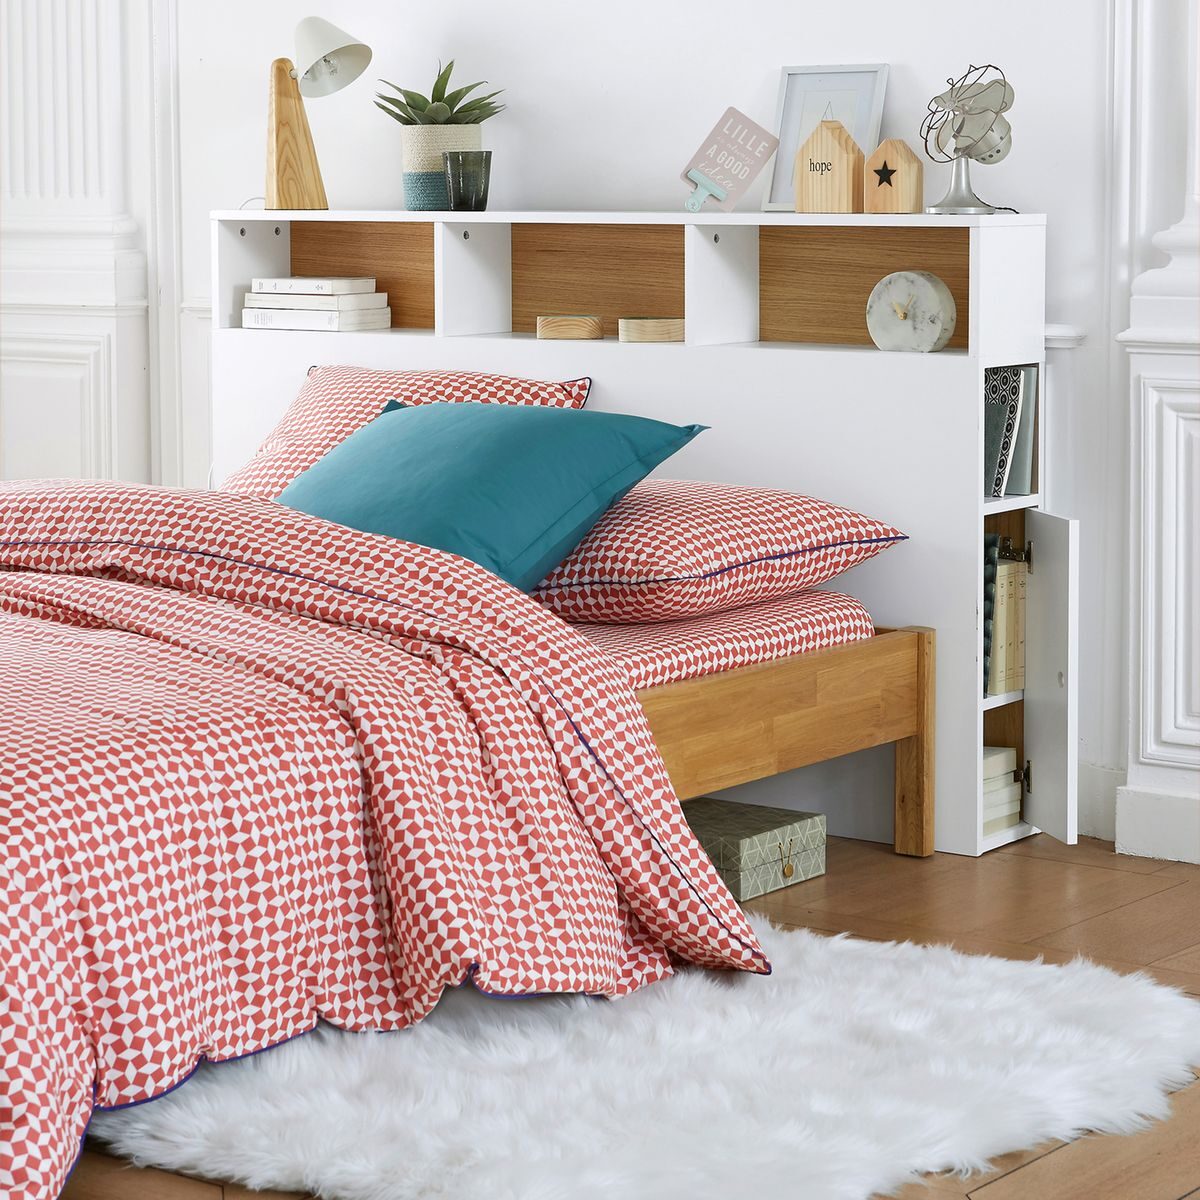 optimiser le rangement tête de lit avec rangement blanc scandinave bois design - blog déco - clem around the corner